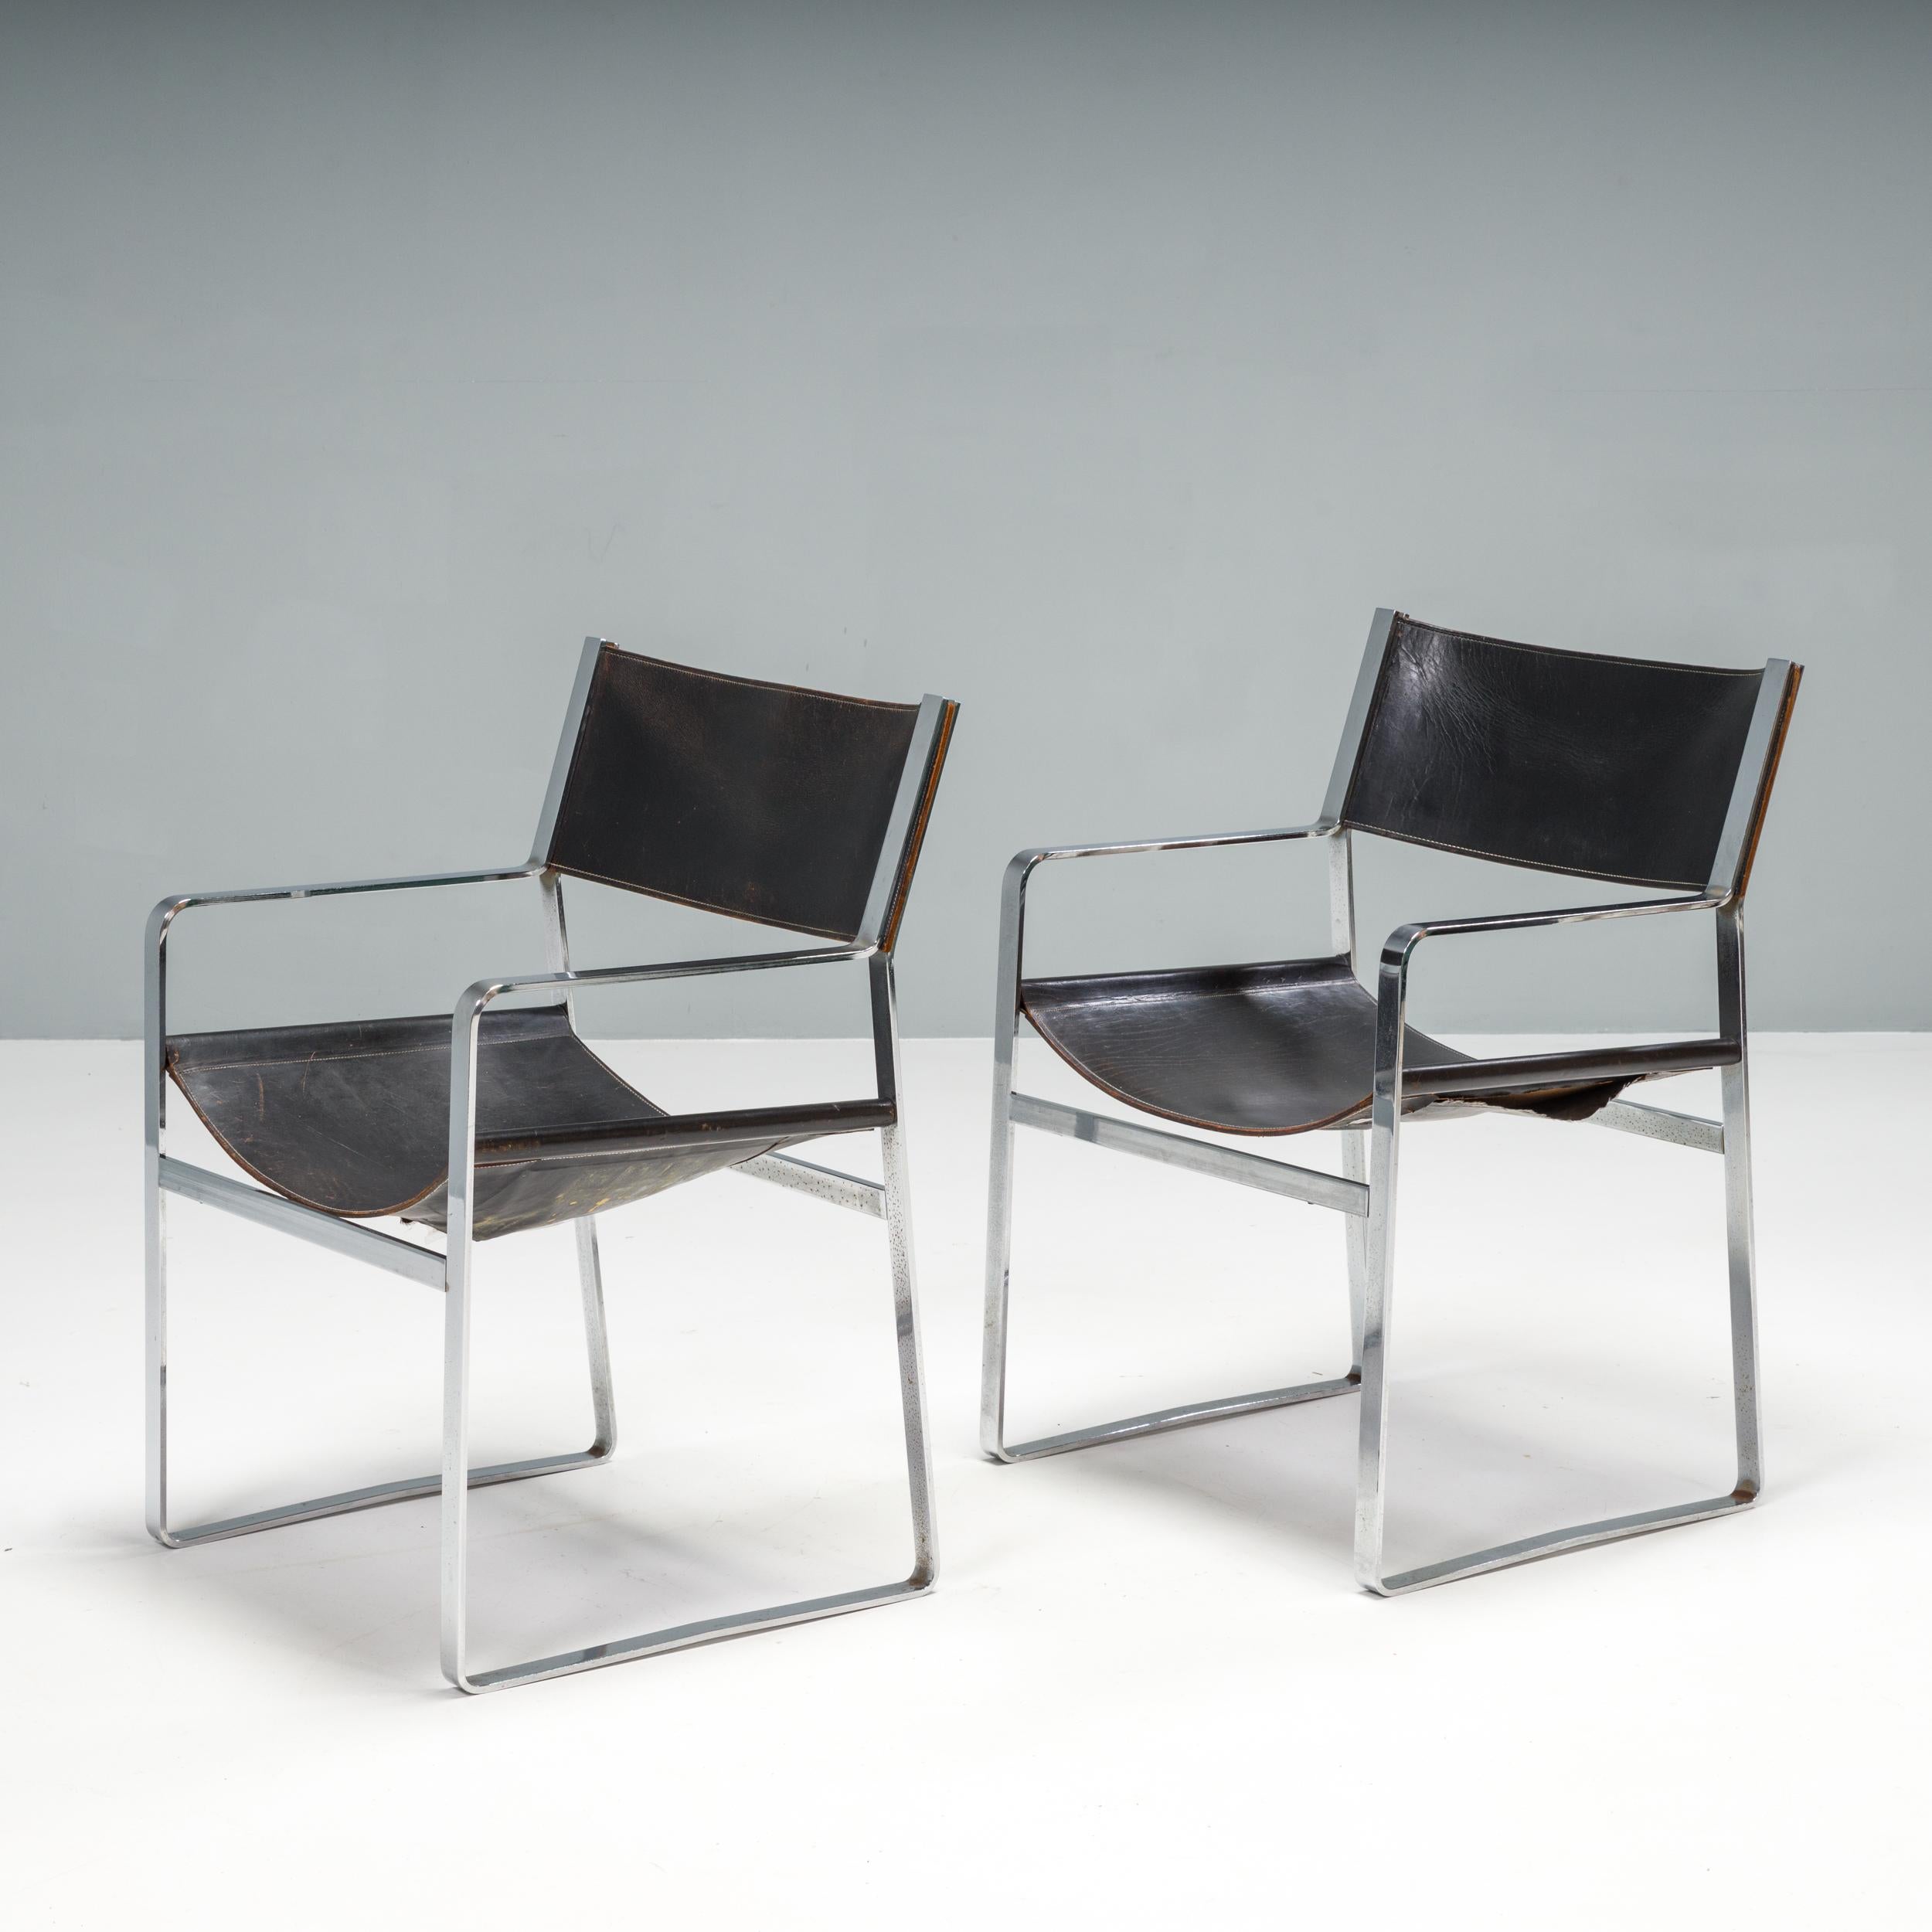 Der ursprünglich von Hans J. Wegner für die Ausstellung der Copenhagen Cabinet Makers Guild 1947 entworfene Stuhl JH-813 war ursprünglich für die Herstellung aus Holz gedacht. Erst in den 1970er Jahren wurden die Stühle von der dänischen Firma